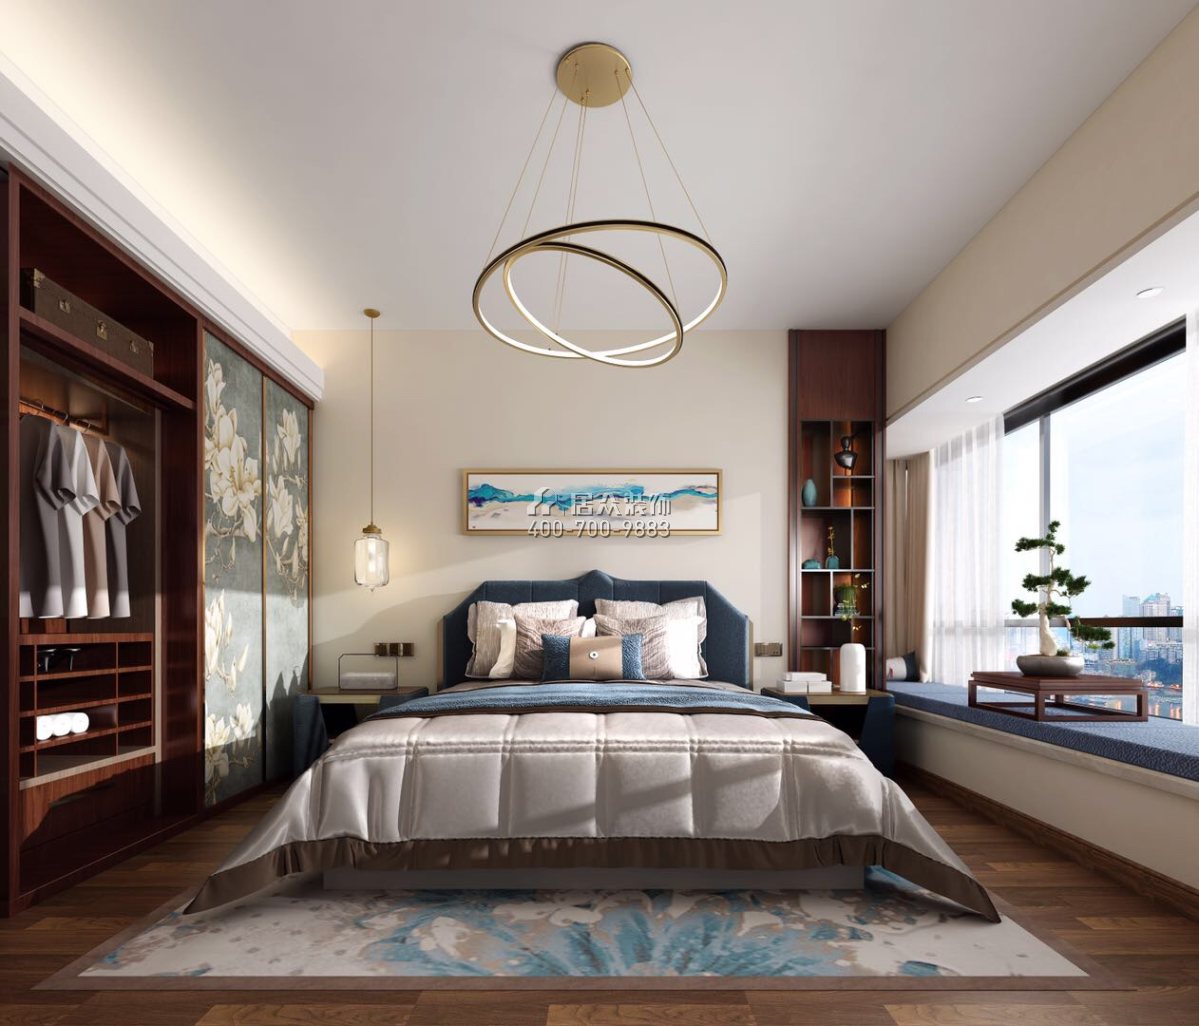 世榮作品壹號四期128平方米中式風格平層戶型臥室裝修效果圖